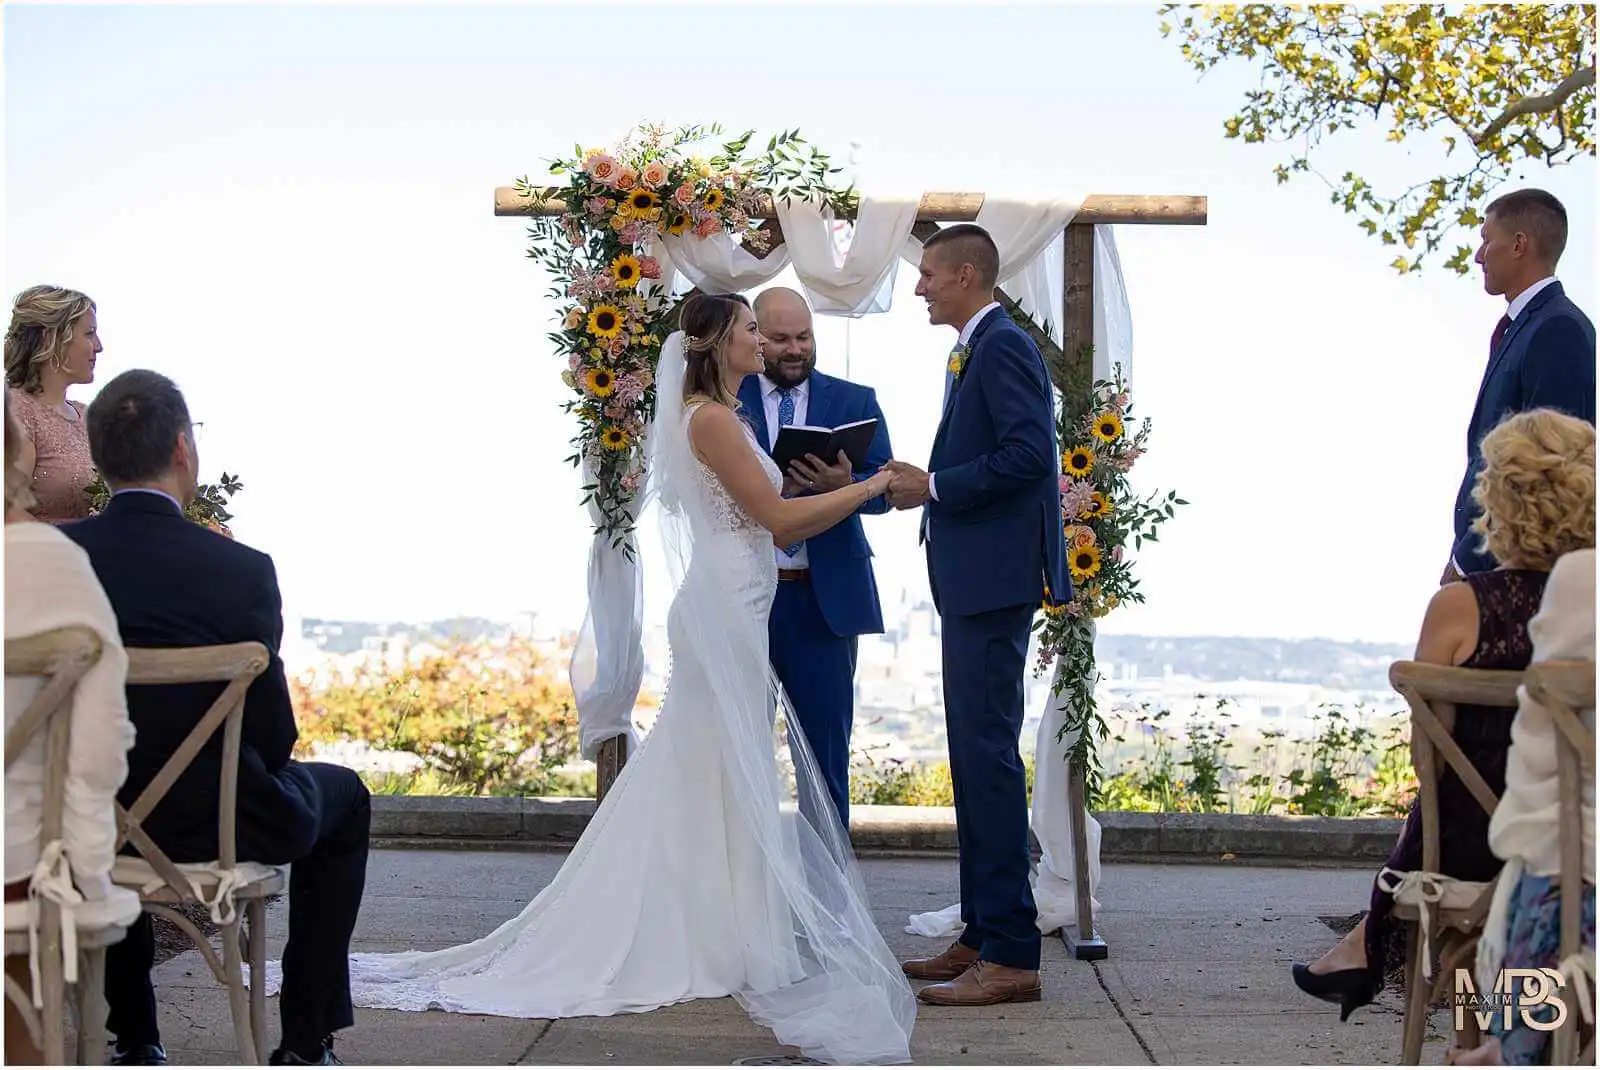 Cincinnati Micro wedding elopement Mt. Echo Park Elopement Ceremony